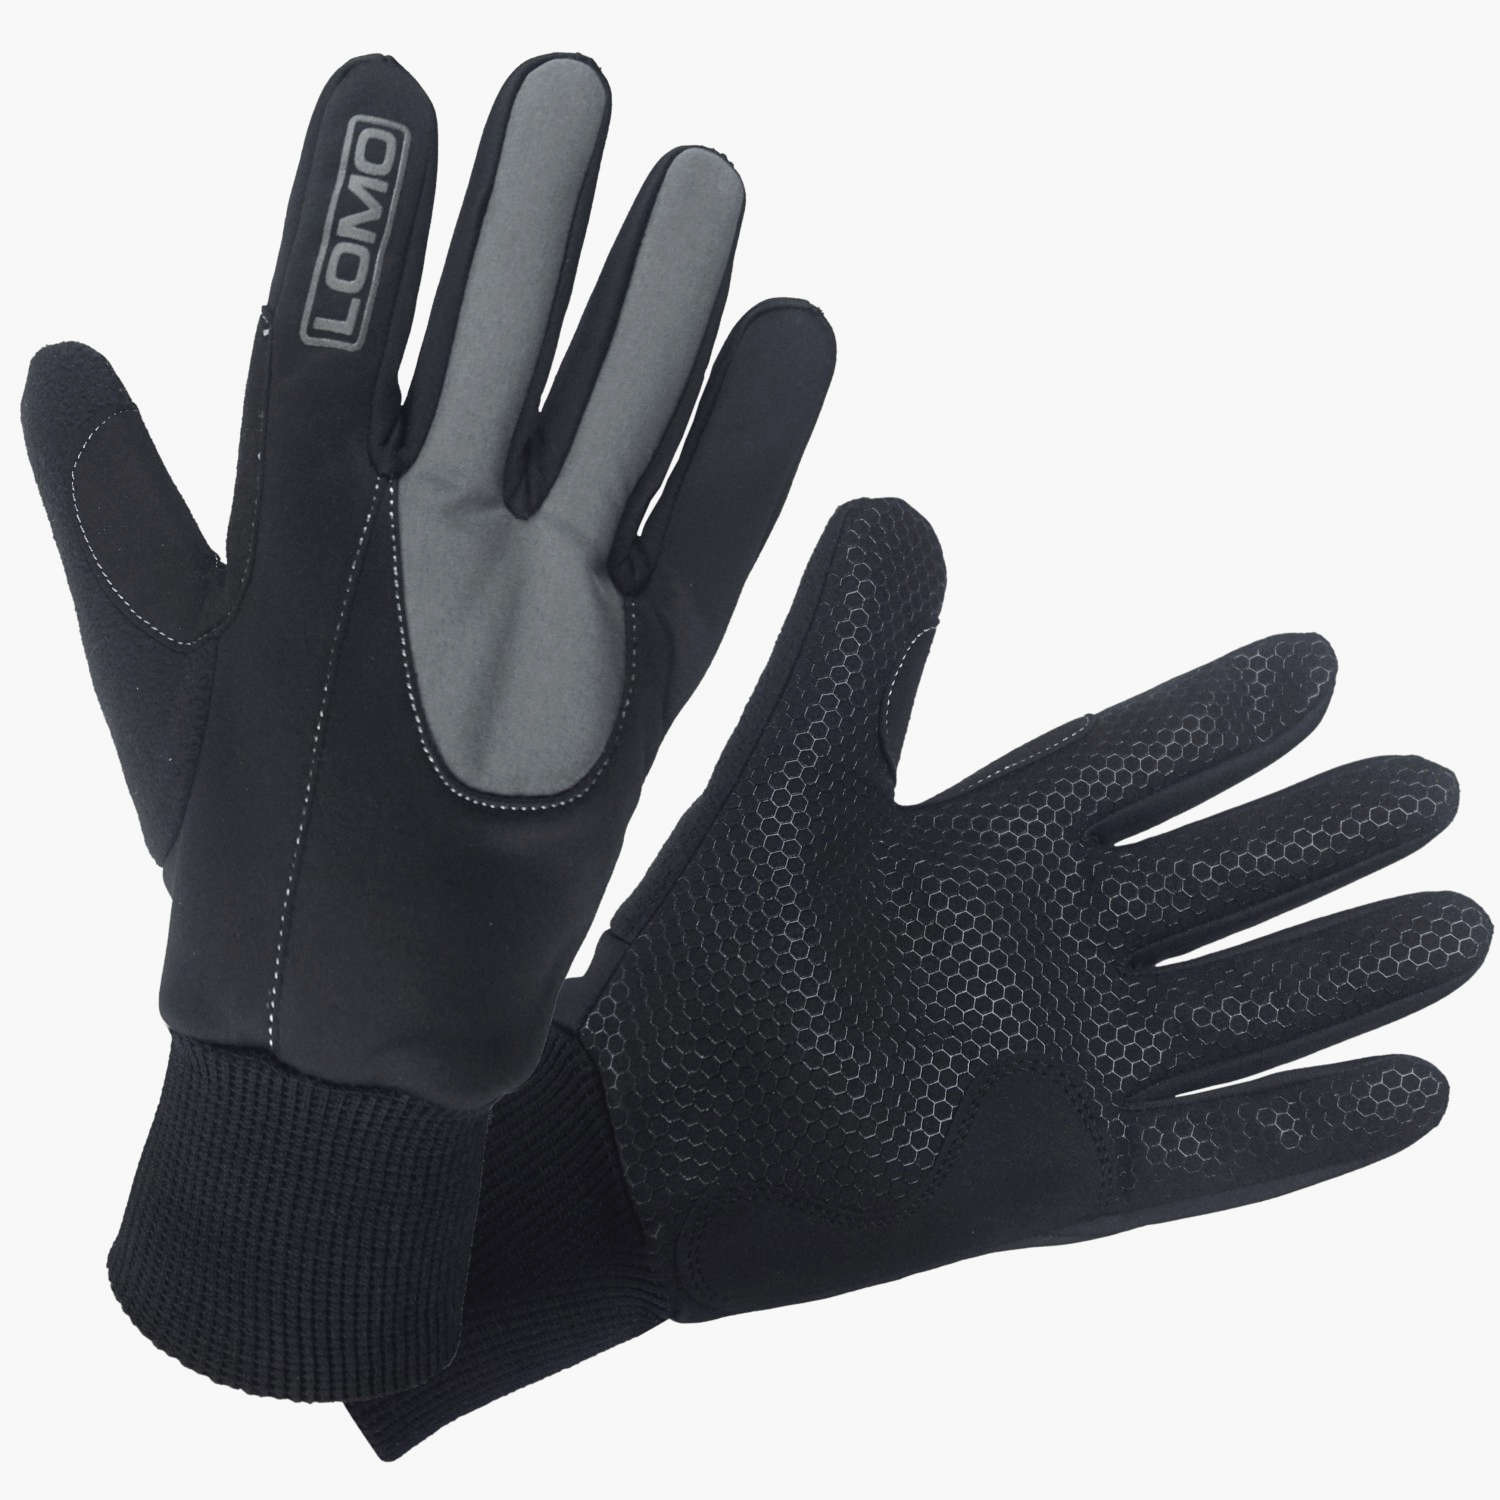 https://www.lomo.co.uk/wp-content/uploads/2022/06/Cycling-Full-Finger-Gloves-1.jpg